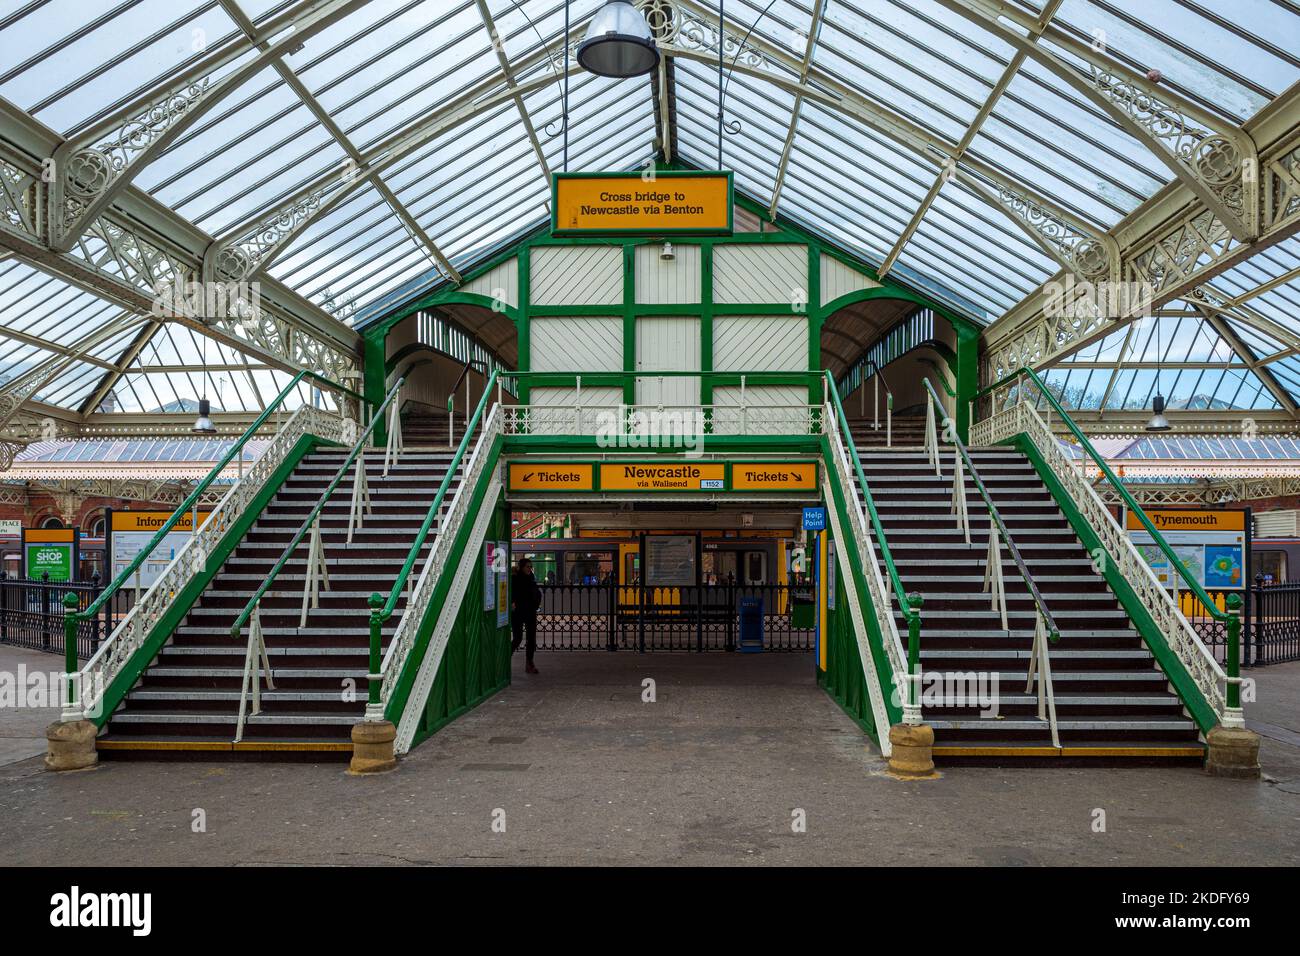 Concourse de la gare de Tynemouth. La station de métro Tynemouth est une station de métro Tyne and Wear, qui a ouvert ses portes en 1882 et a rejoint le réseau métropolitain en 1980. Banque D'Images